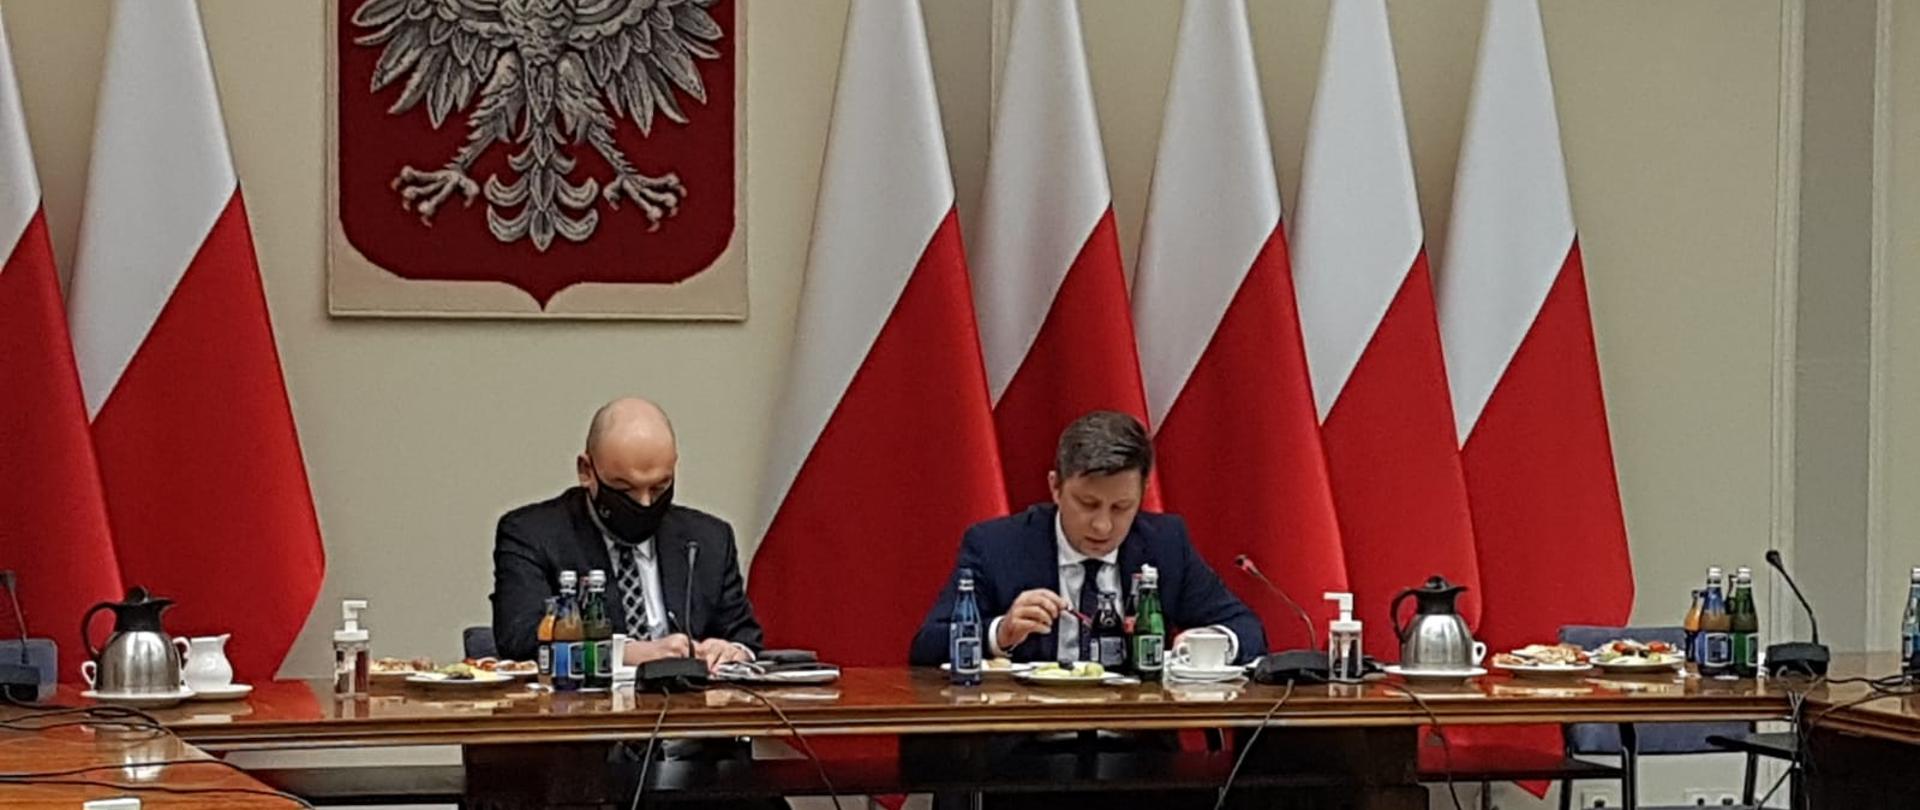 Po prawej Michał Dworczyk minister szef Kancelarii Prezesa Rady Ministrów, po lewej Jan Dziedziczak pełnomocnik rządu do spraw Polonii i Polaków za granicą